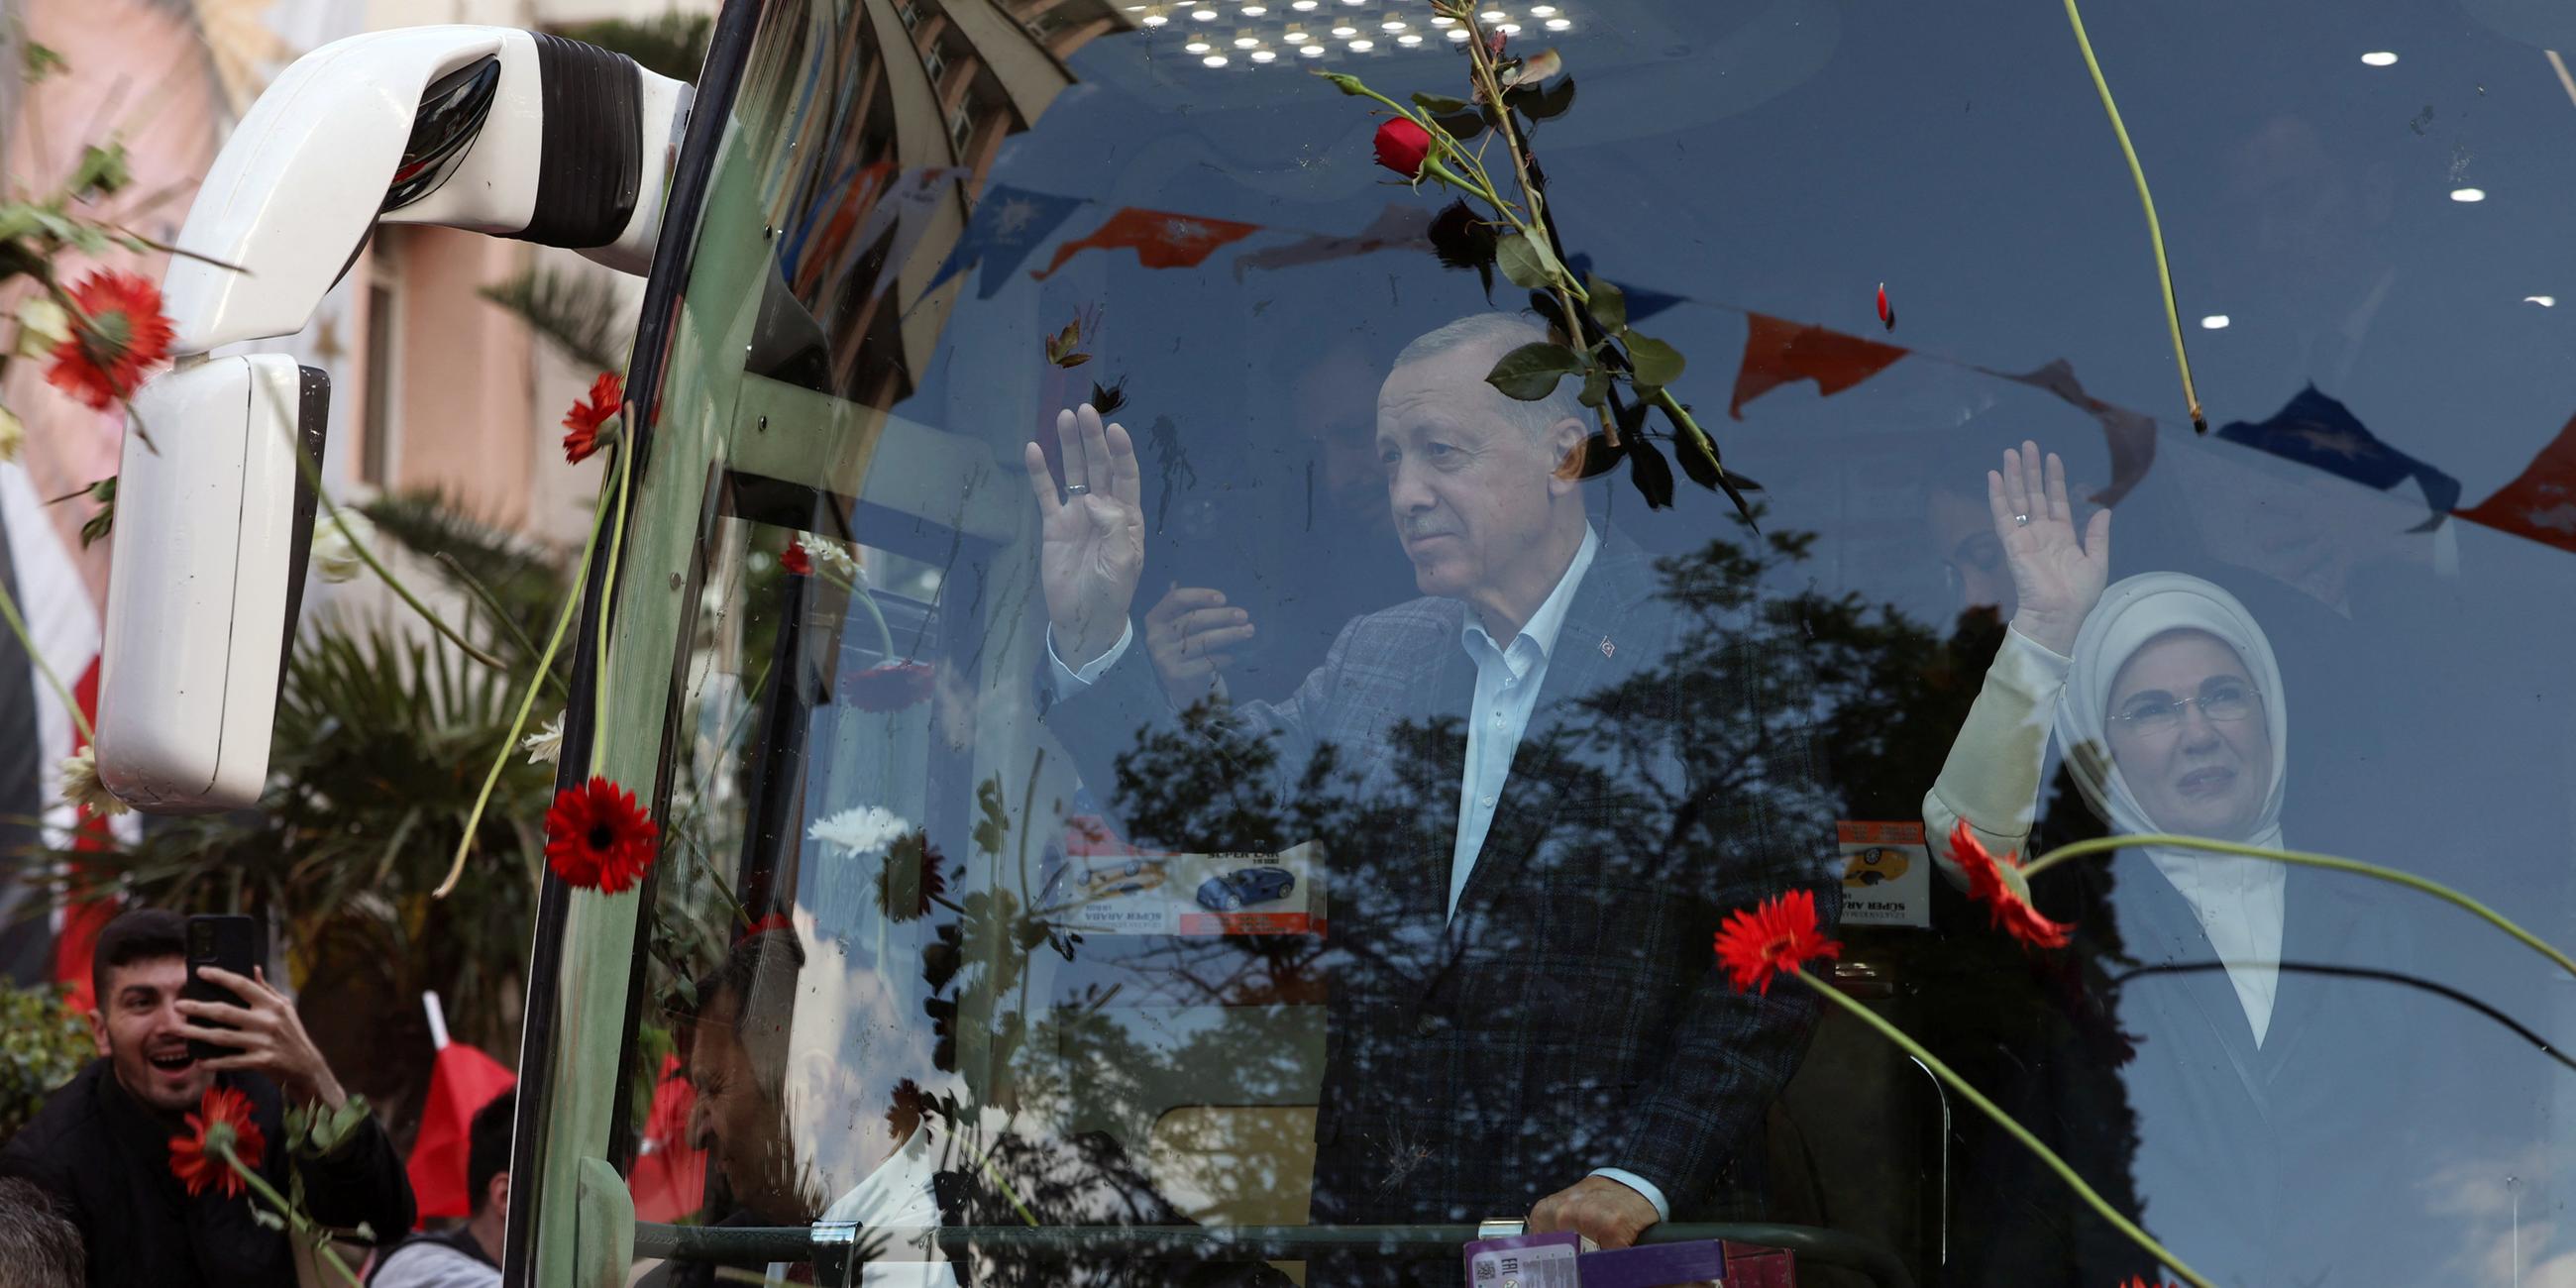 Der türkische Präsident Erdogan wird von seiner Frau Emine Erdogan begleitet und begrüßt seine Unterstützer als er in einem Bus auf einer Parade ankommt. Die Supporter werfen rote Blumen auf den Bus.